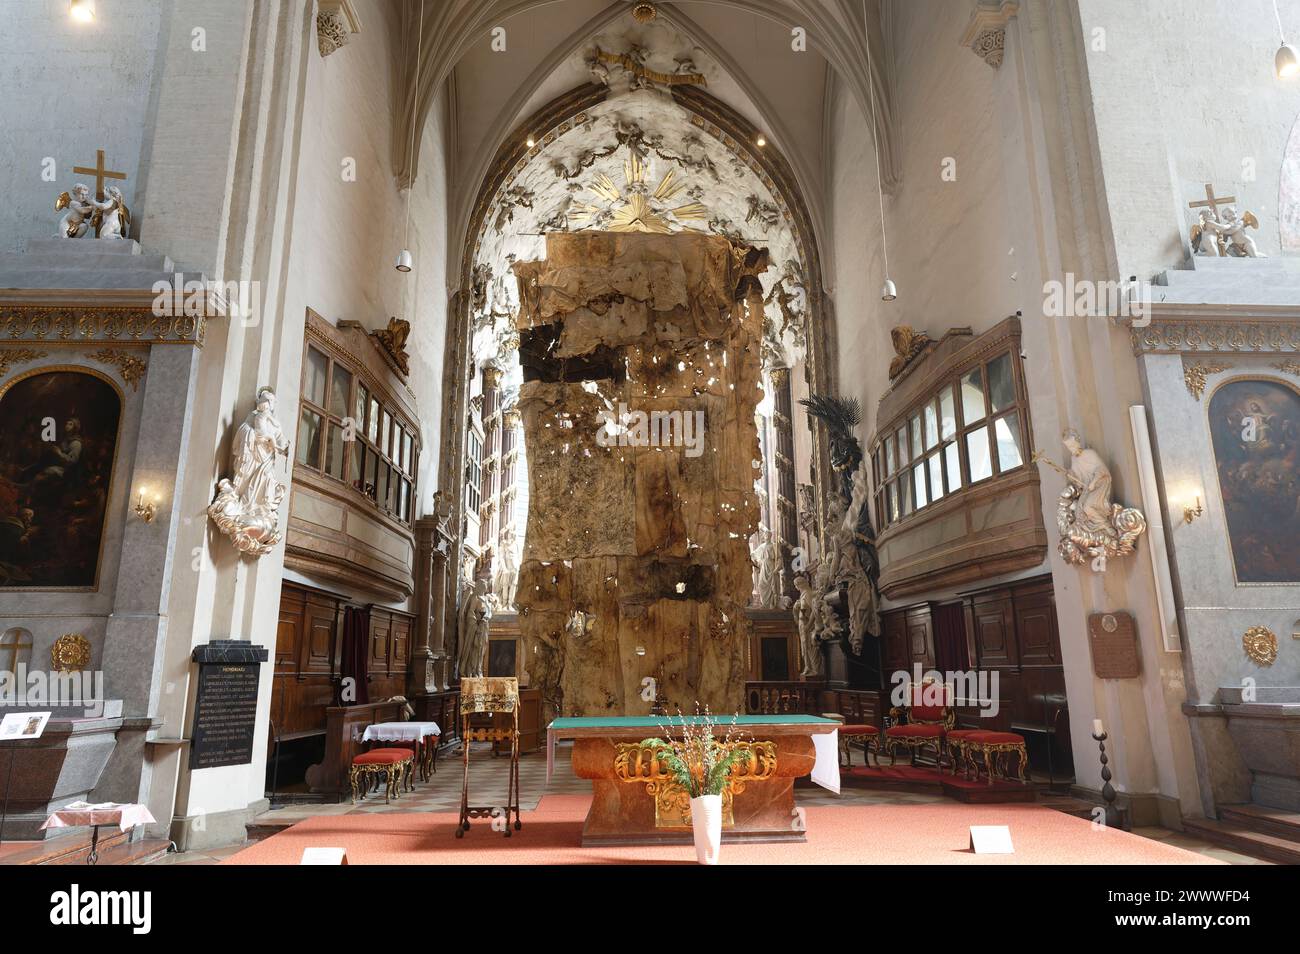 Wien, Österreich. Michaelerkirche (Pfarrkirche St. Michael) ist eine römisch-katholische Pfarrkirche am Michaelerplatz im 1. Wiener Gemeindebezirk. Fastentuch in der Kirche St. Michael Stockfoto